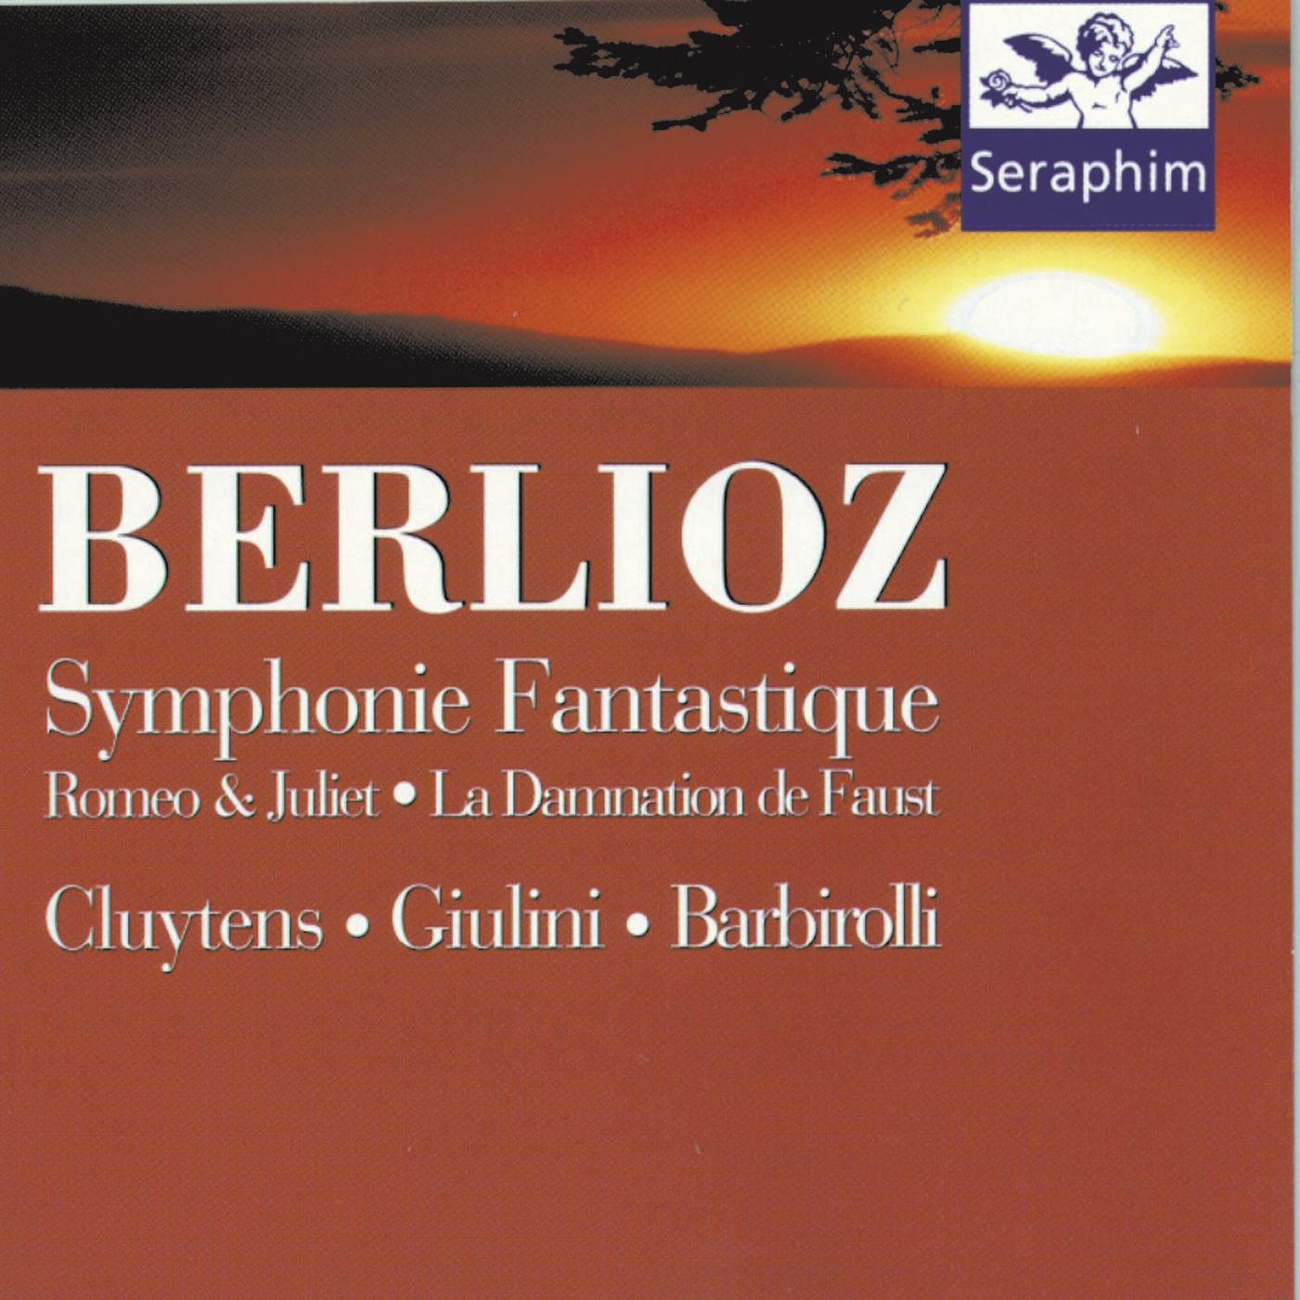 Symphonie fantastique Op. 14 1989 Digital Remaster: III. Sce ne aux champs